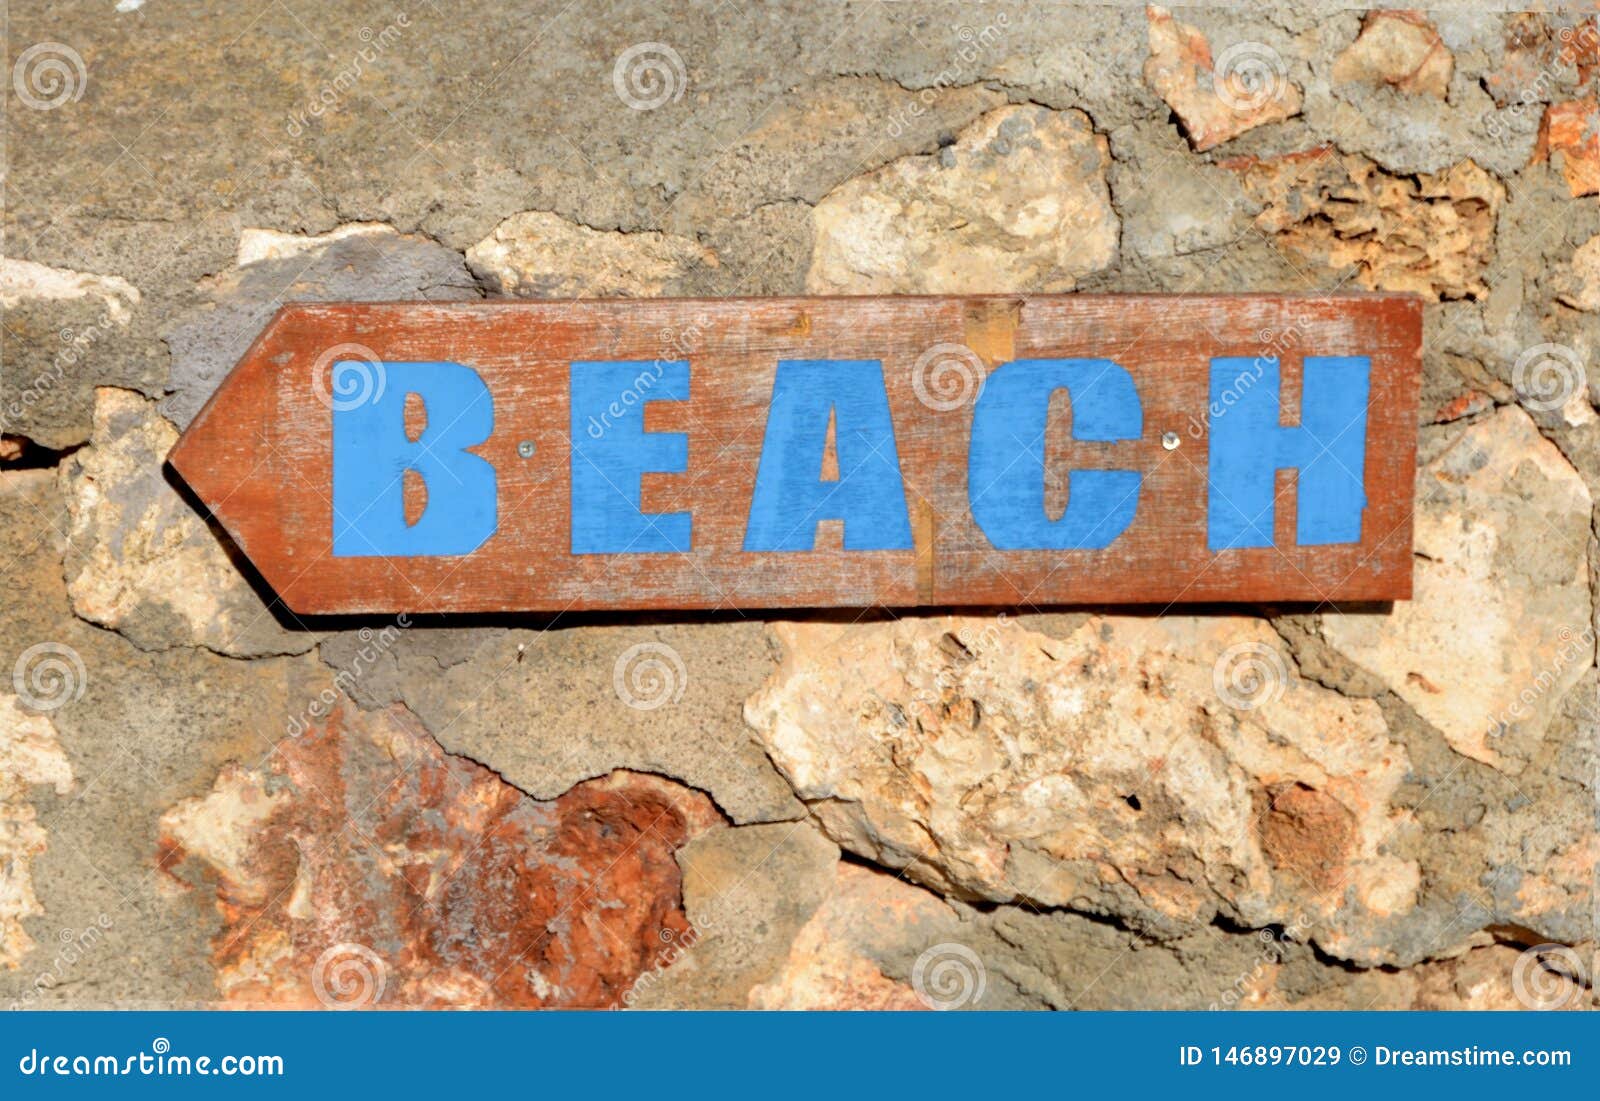 beach sign holidays